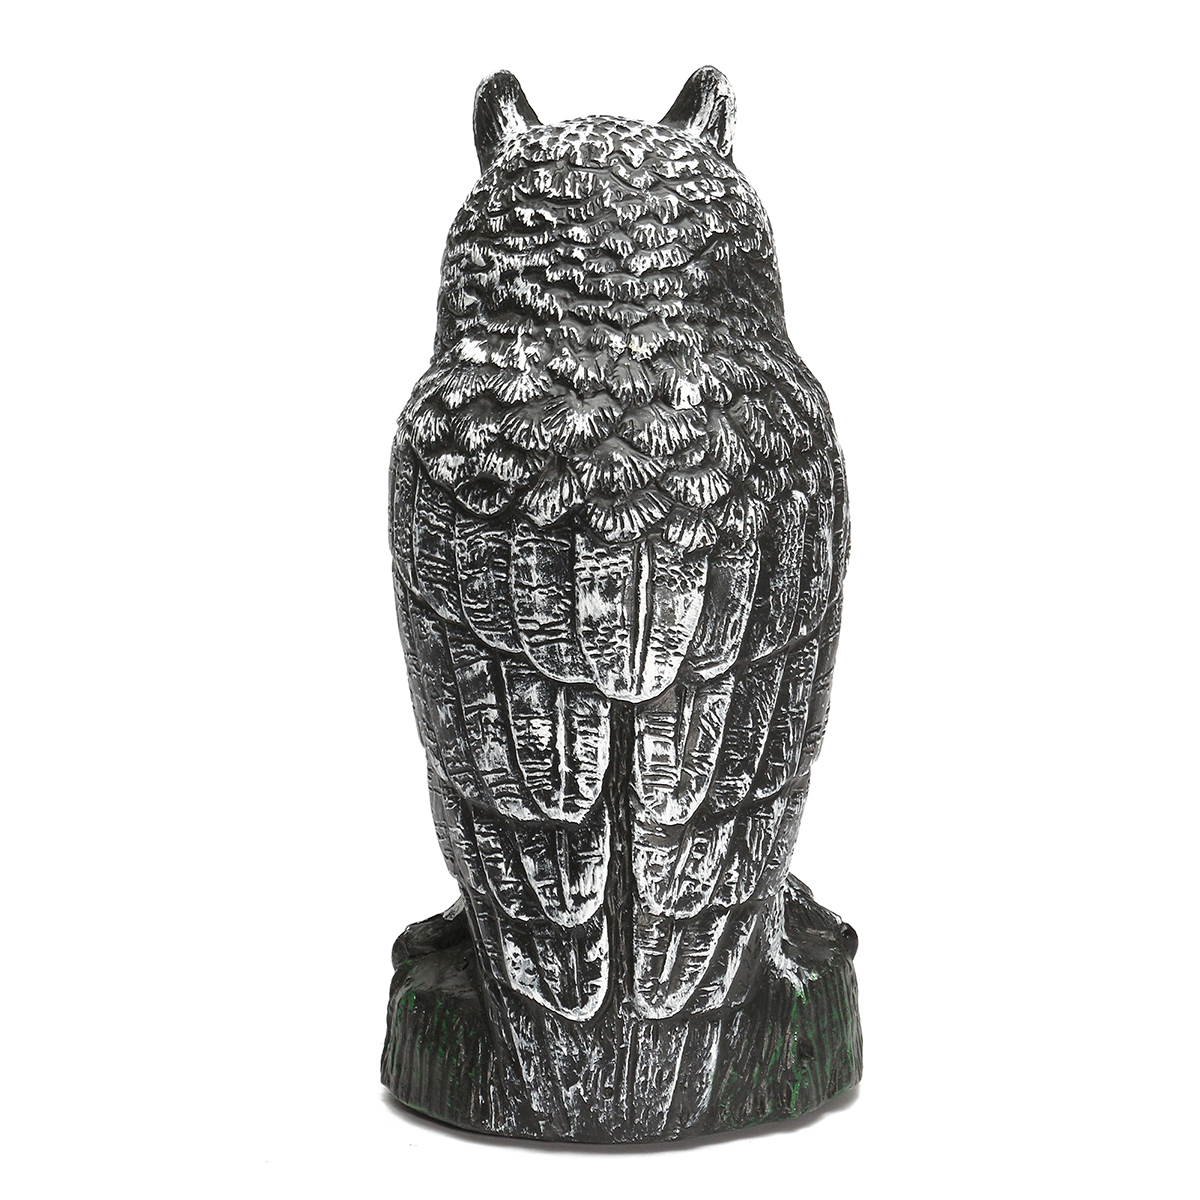 Plastic-Standing-Fake-Owl-Hunting-Decoy-Deterrent-Scarer-Repeller-Garden-Decor-1243366-4